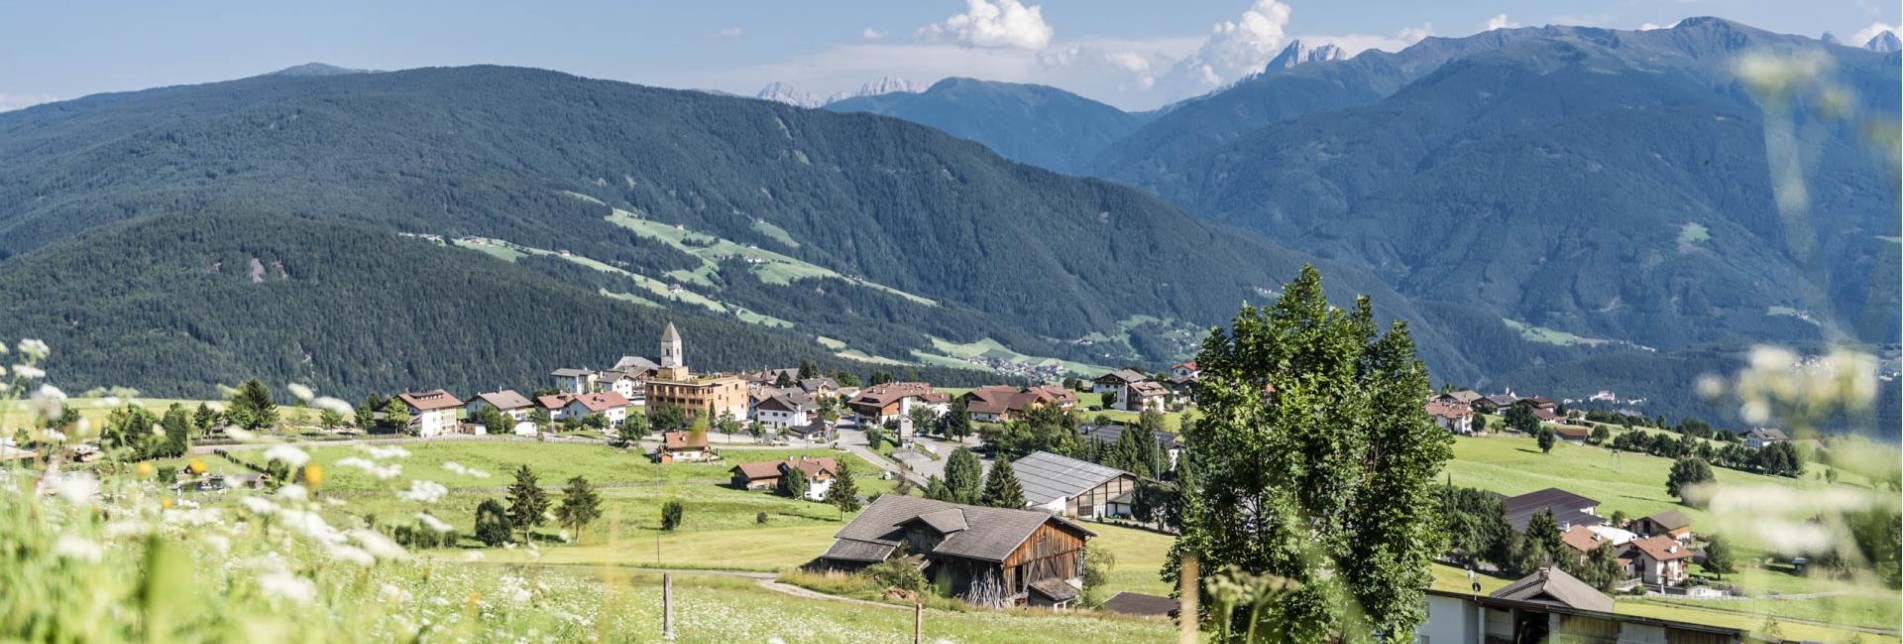 Meransen in Südtirol